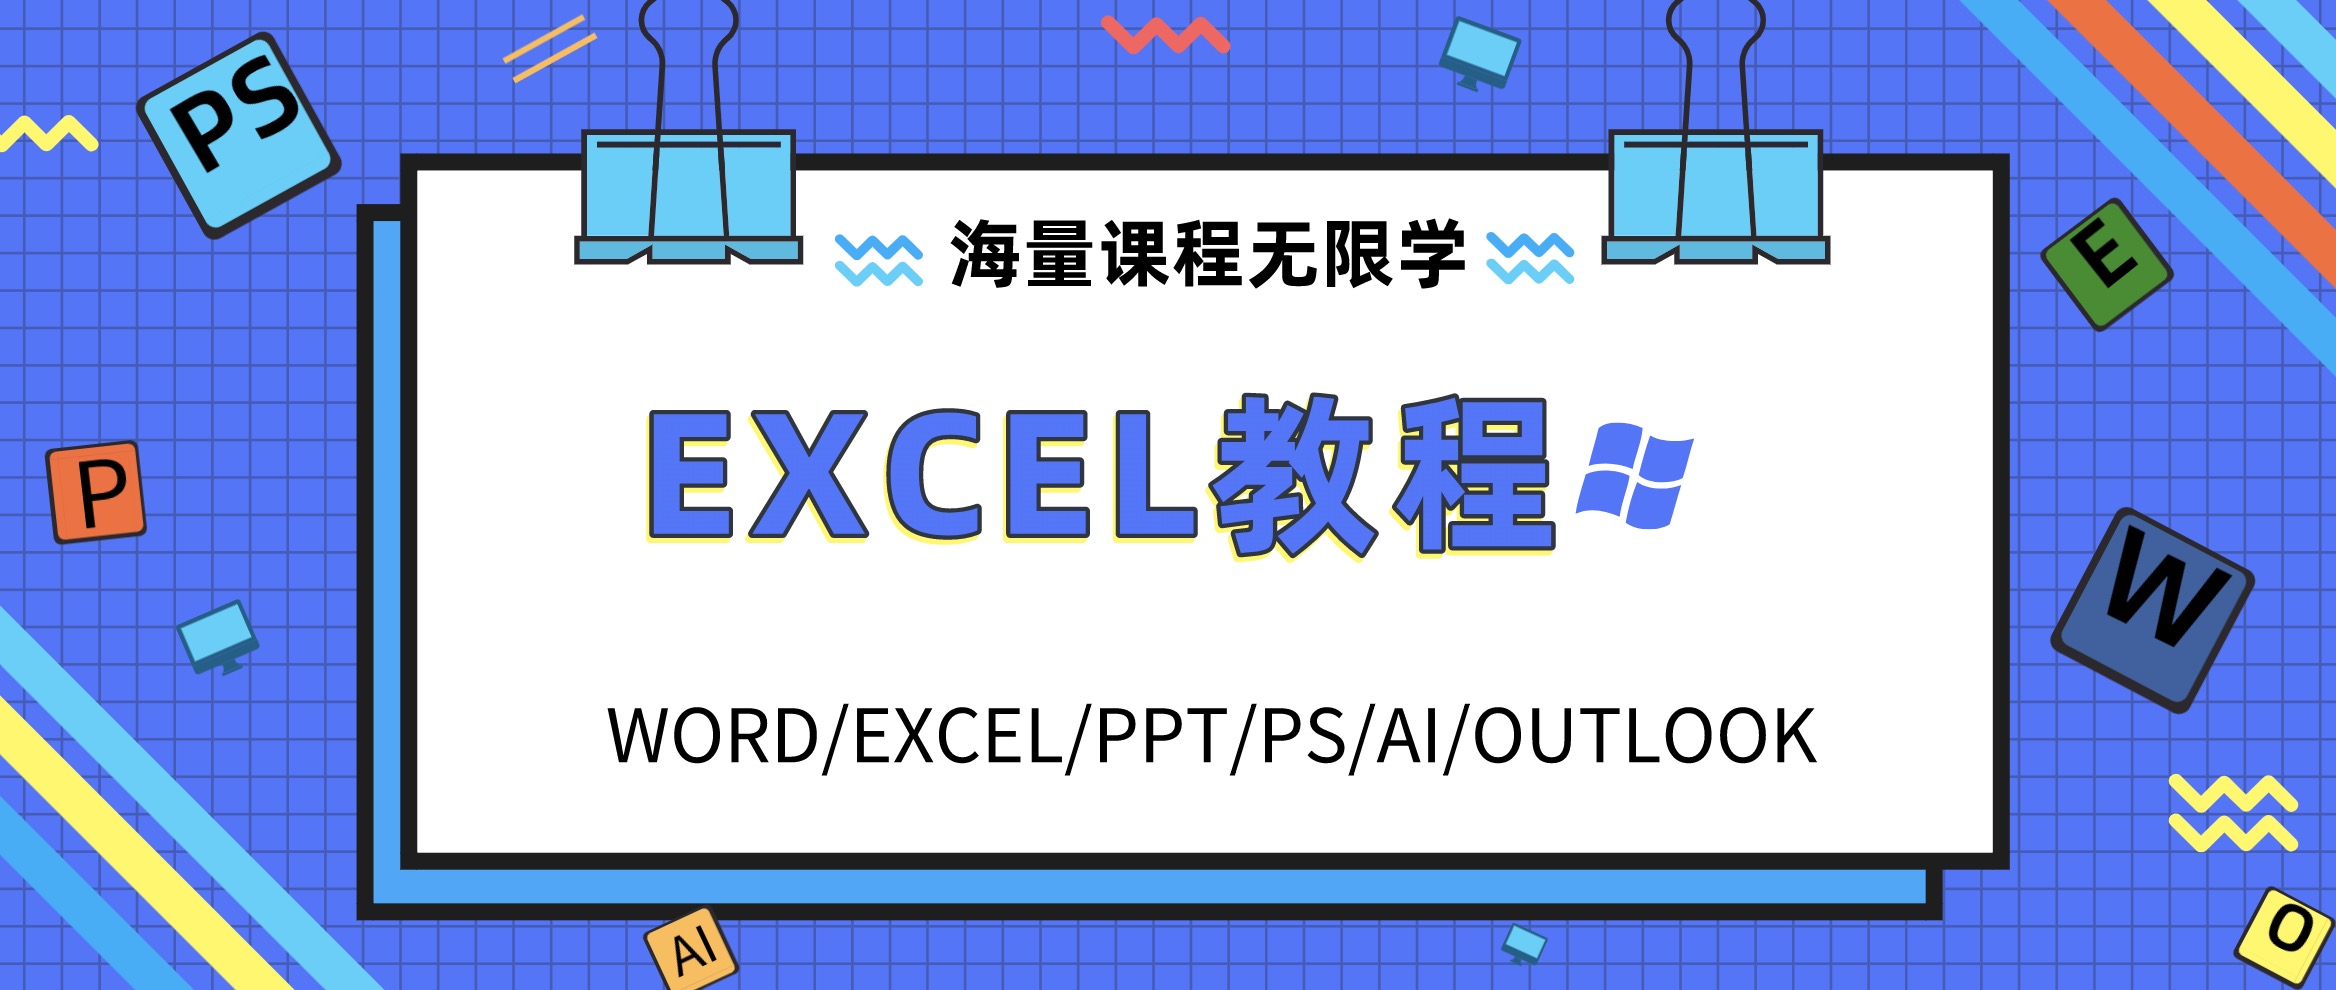 Excel学习教程资料合集包 百度网盘插图